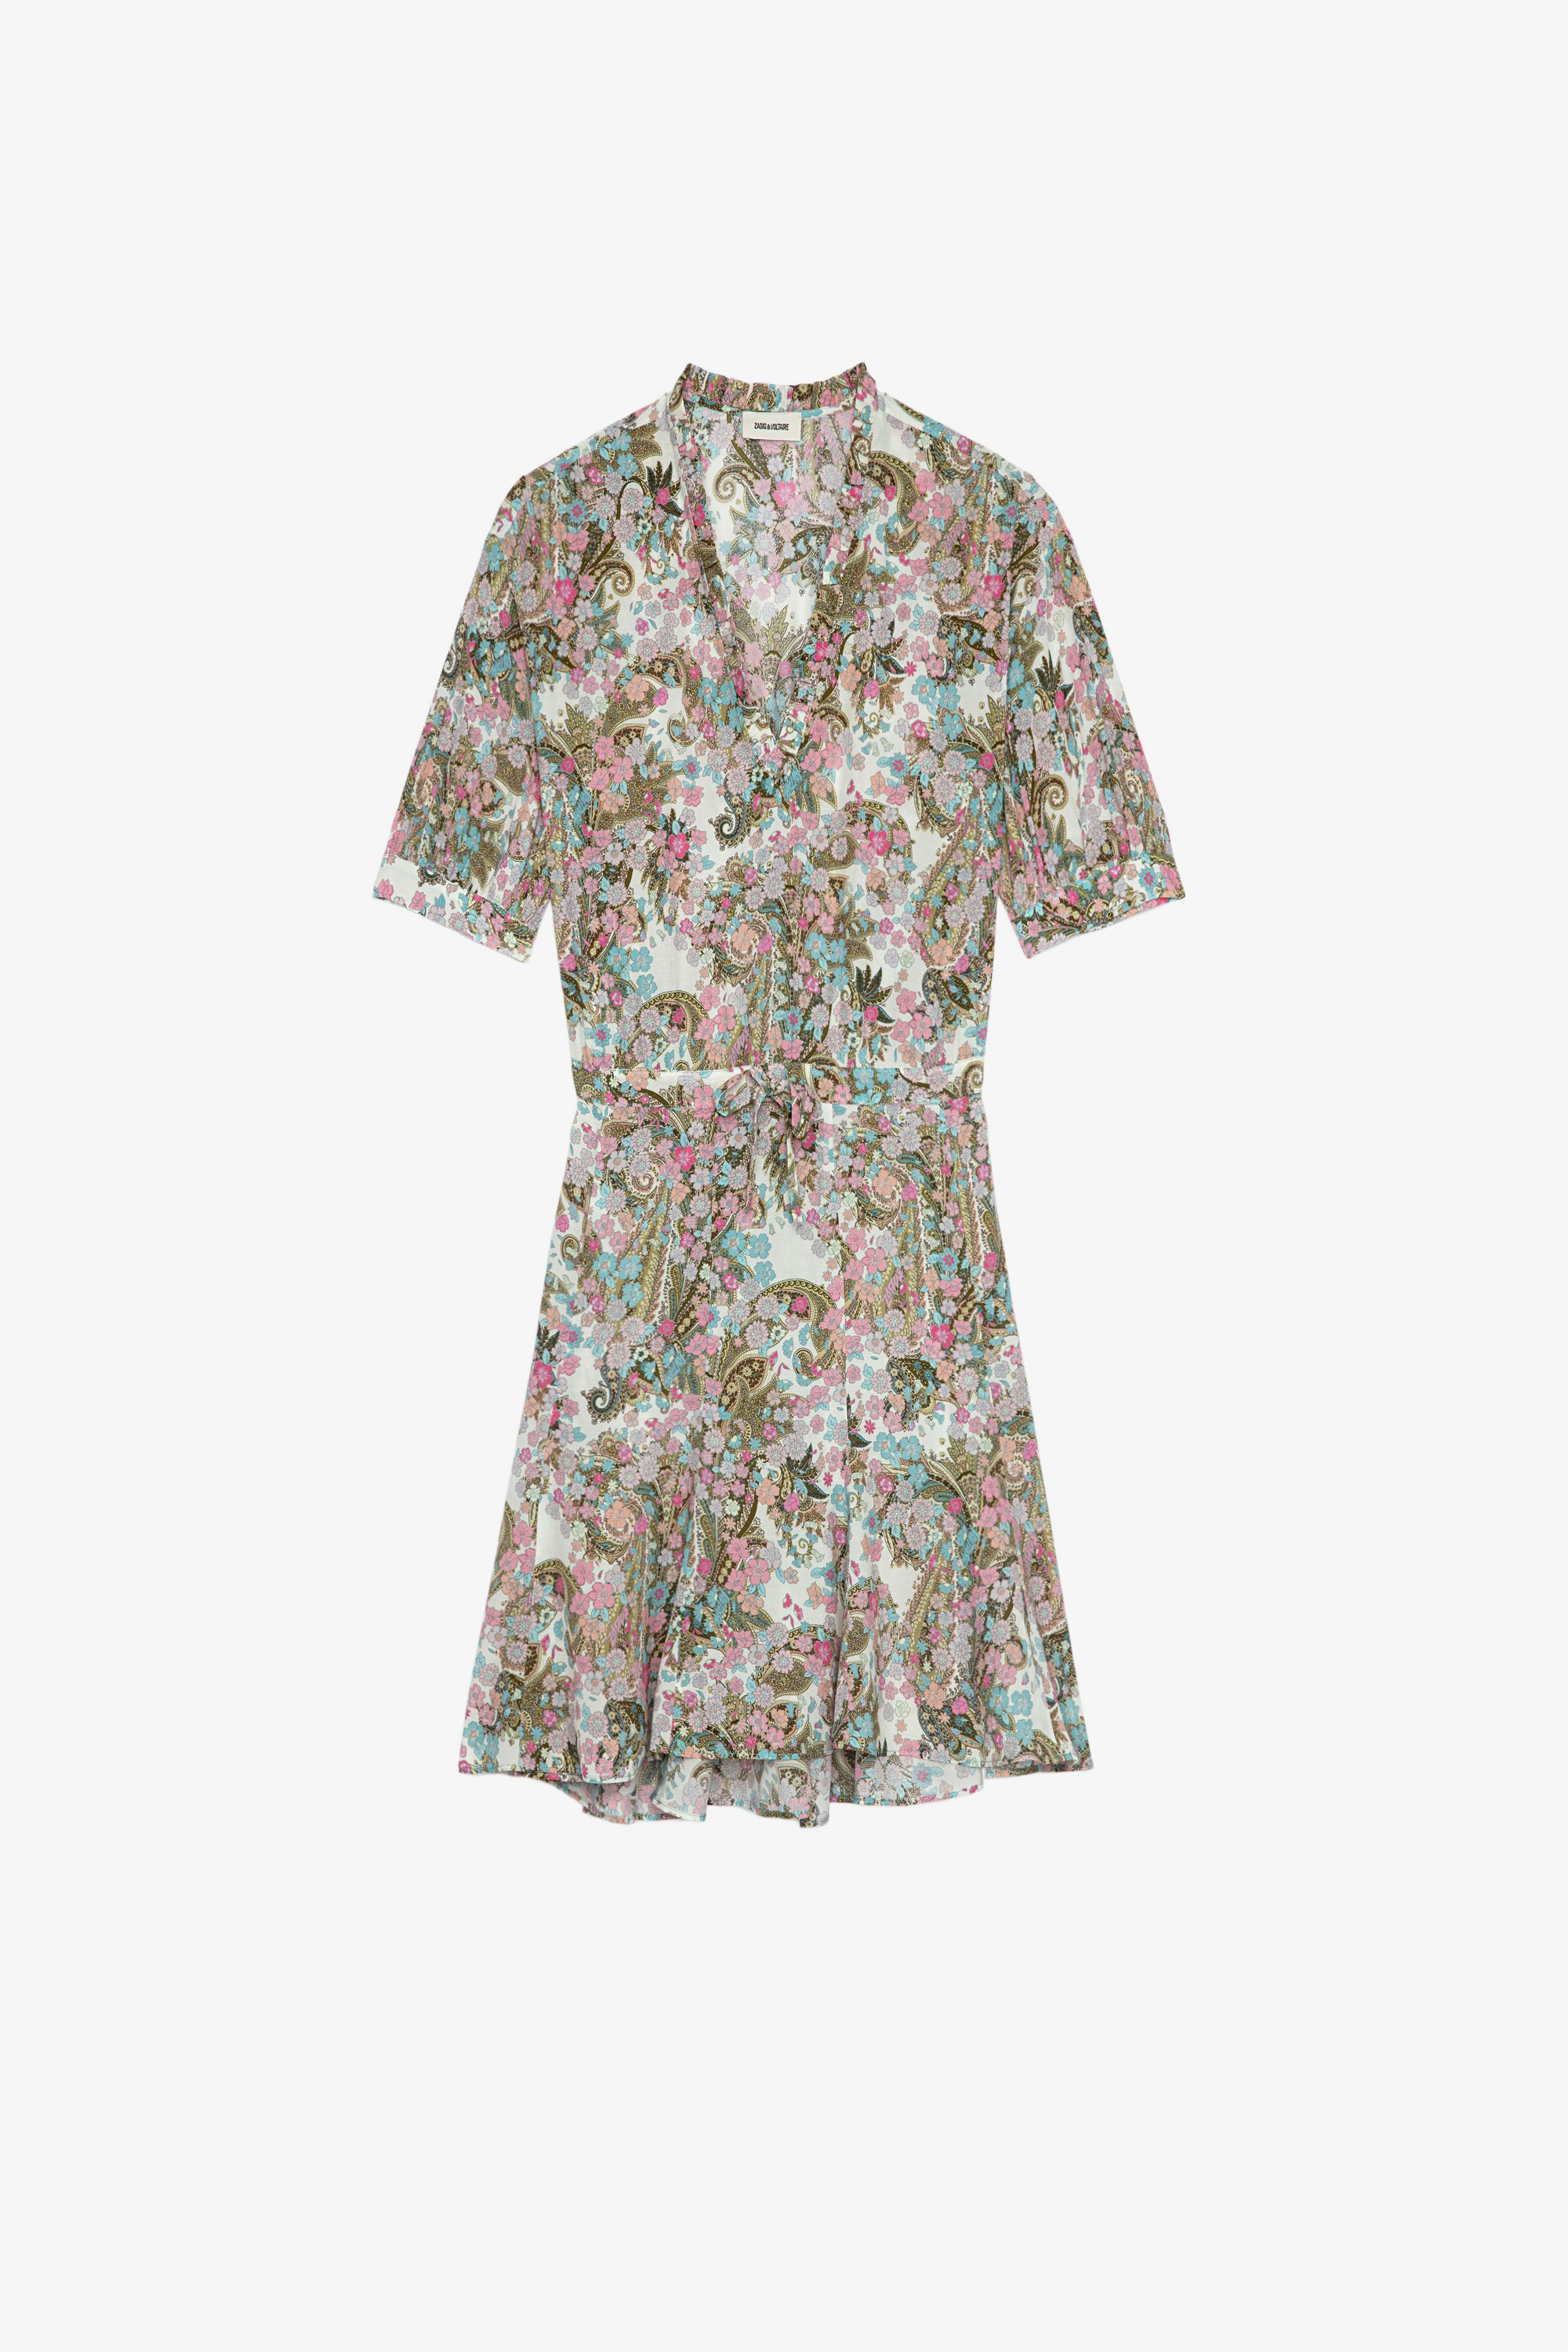 Vestido Remove Vestido corto color lila estampado floral con mangas cortas tipo globo y atado a la cintura Mujer